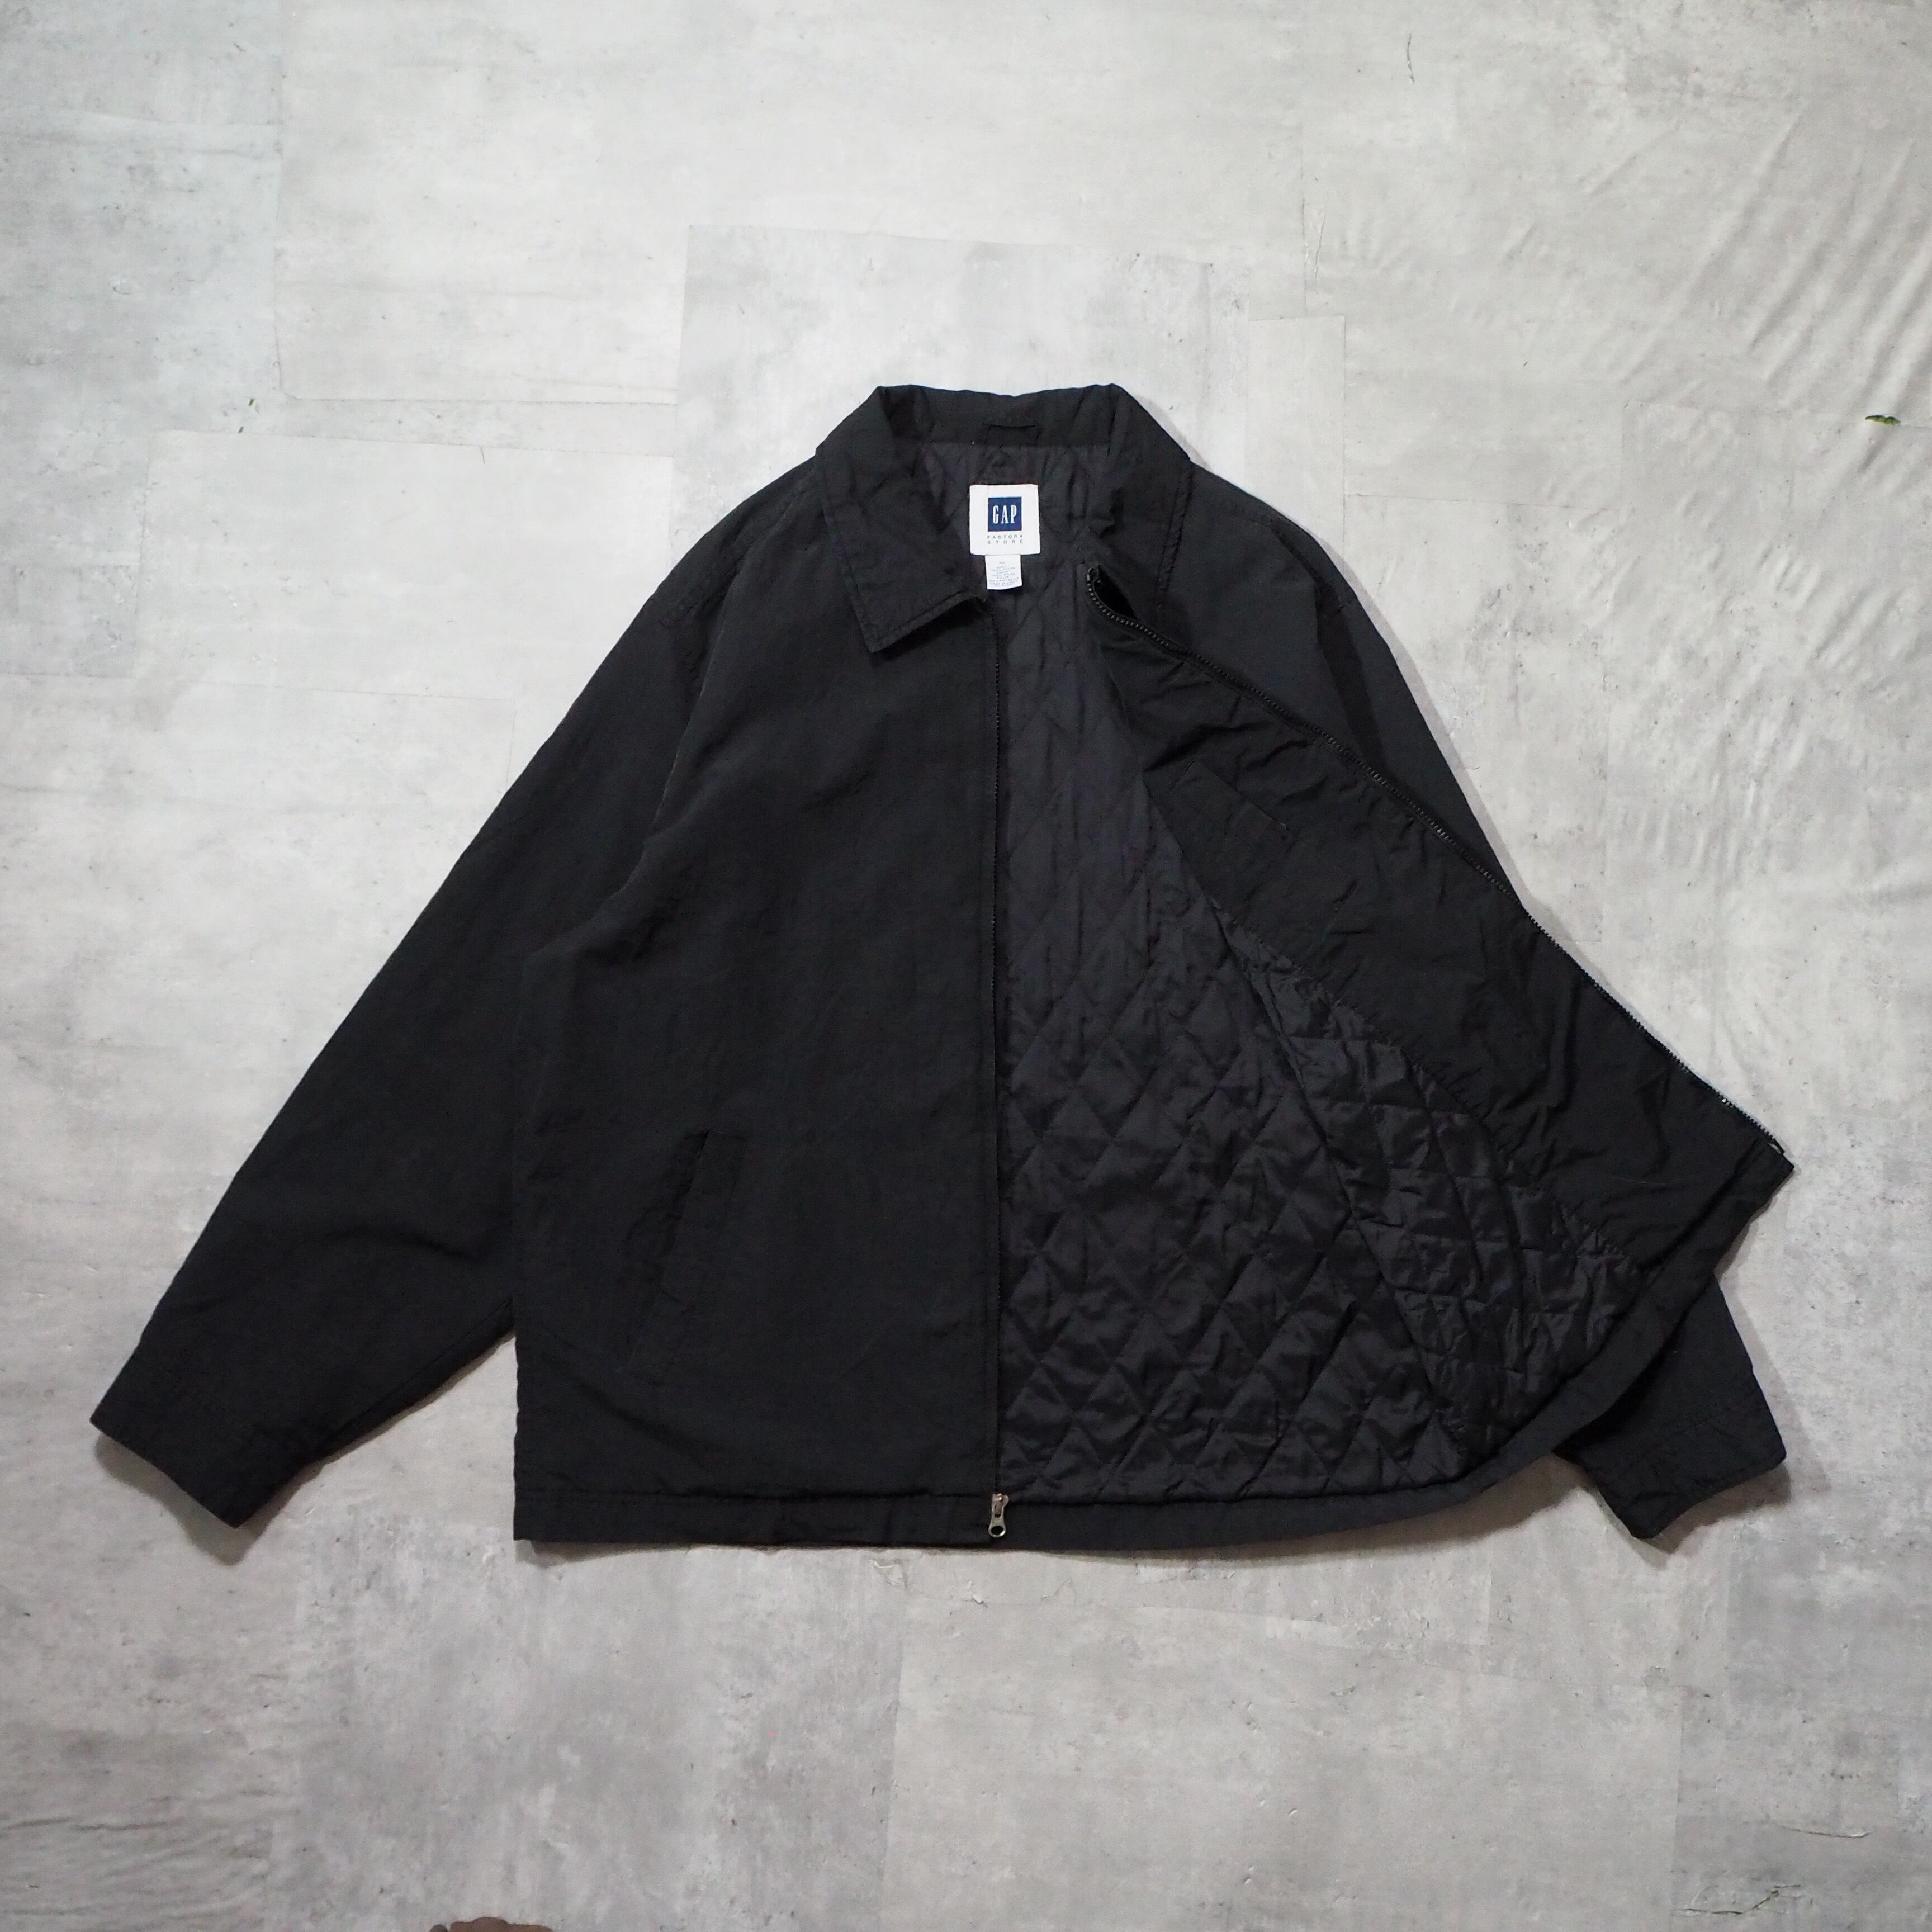 00s “GAP” black nylon jacket 00年代 ギャップ スウィングトップ